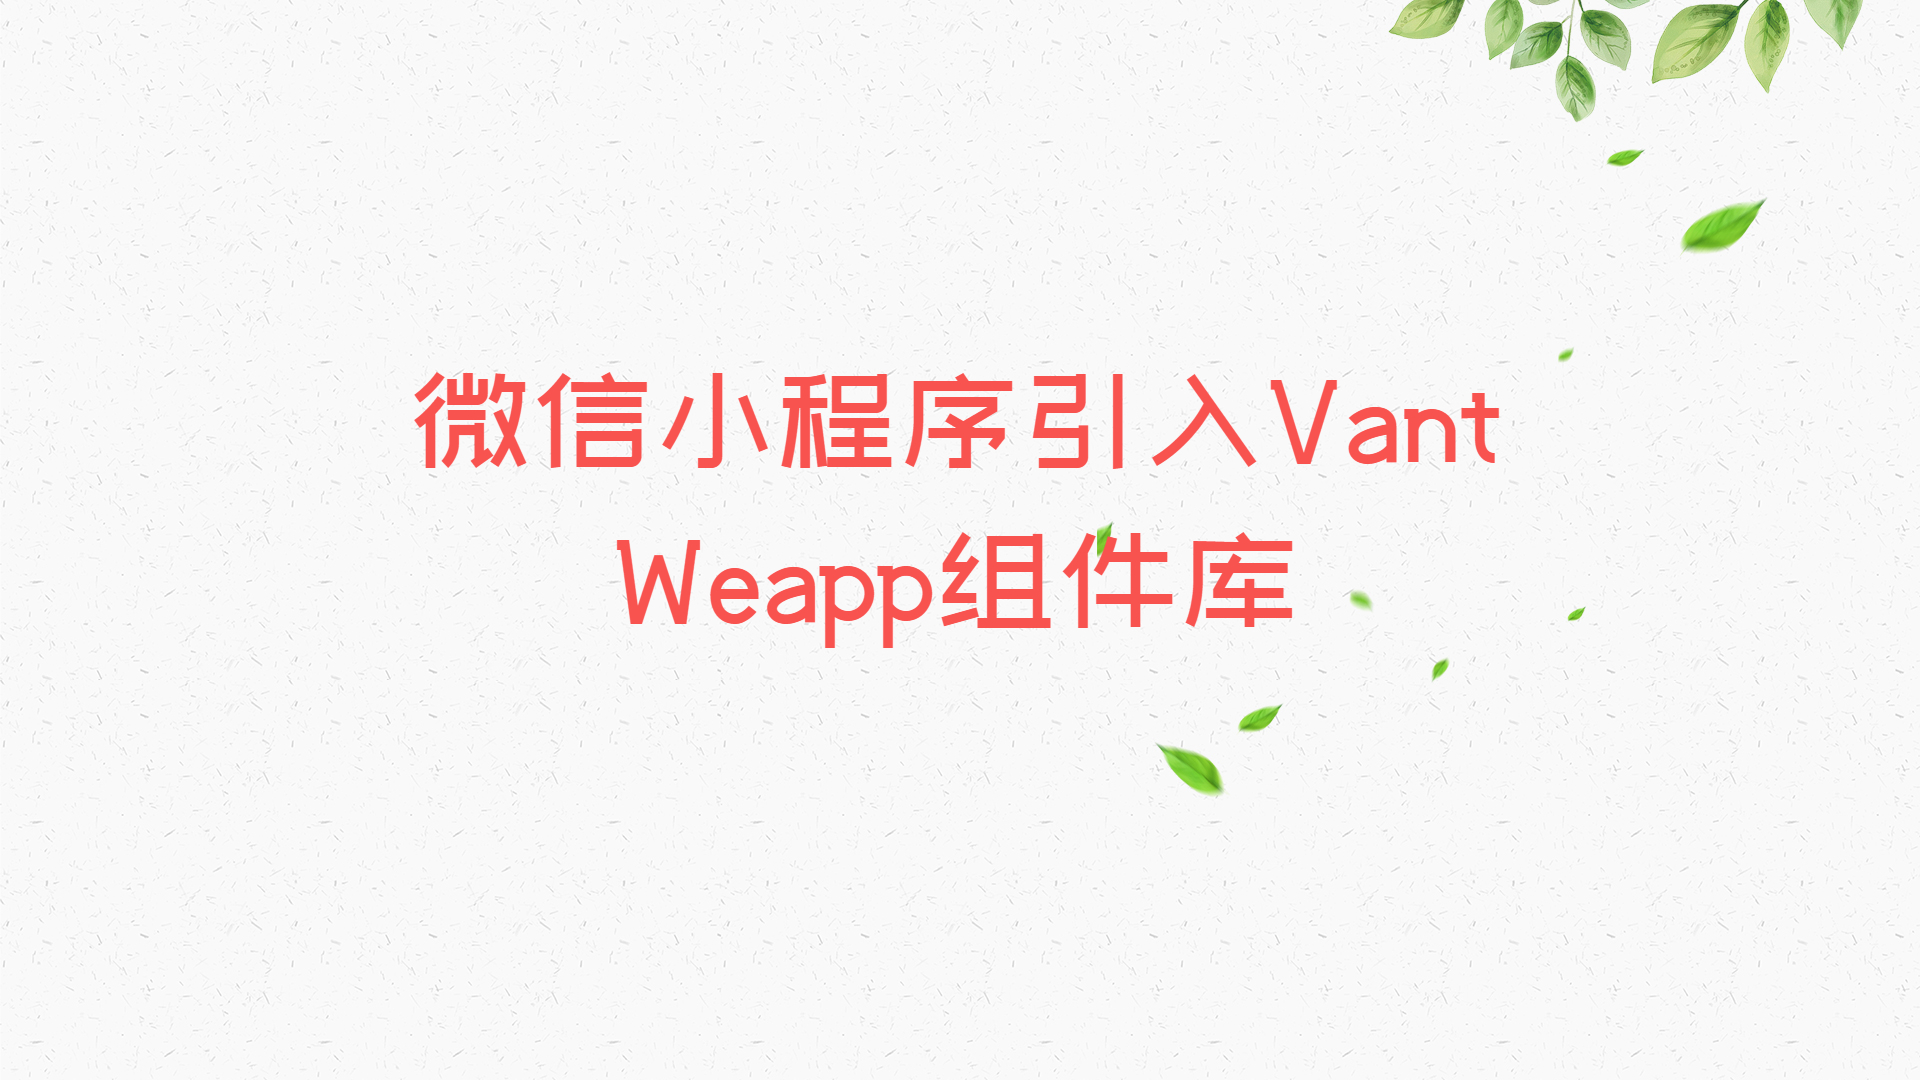 微信小程序引入Vant Weapp组件库